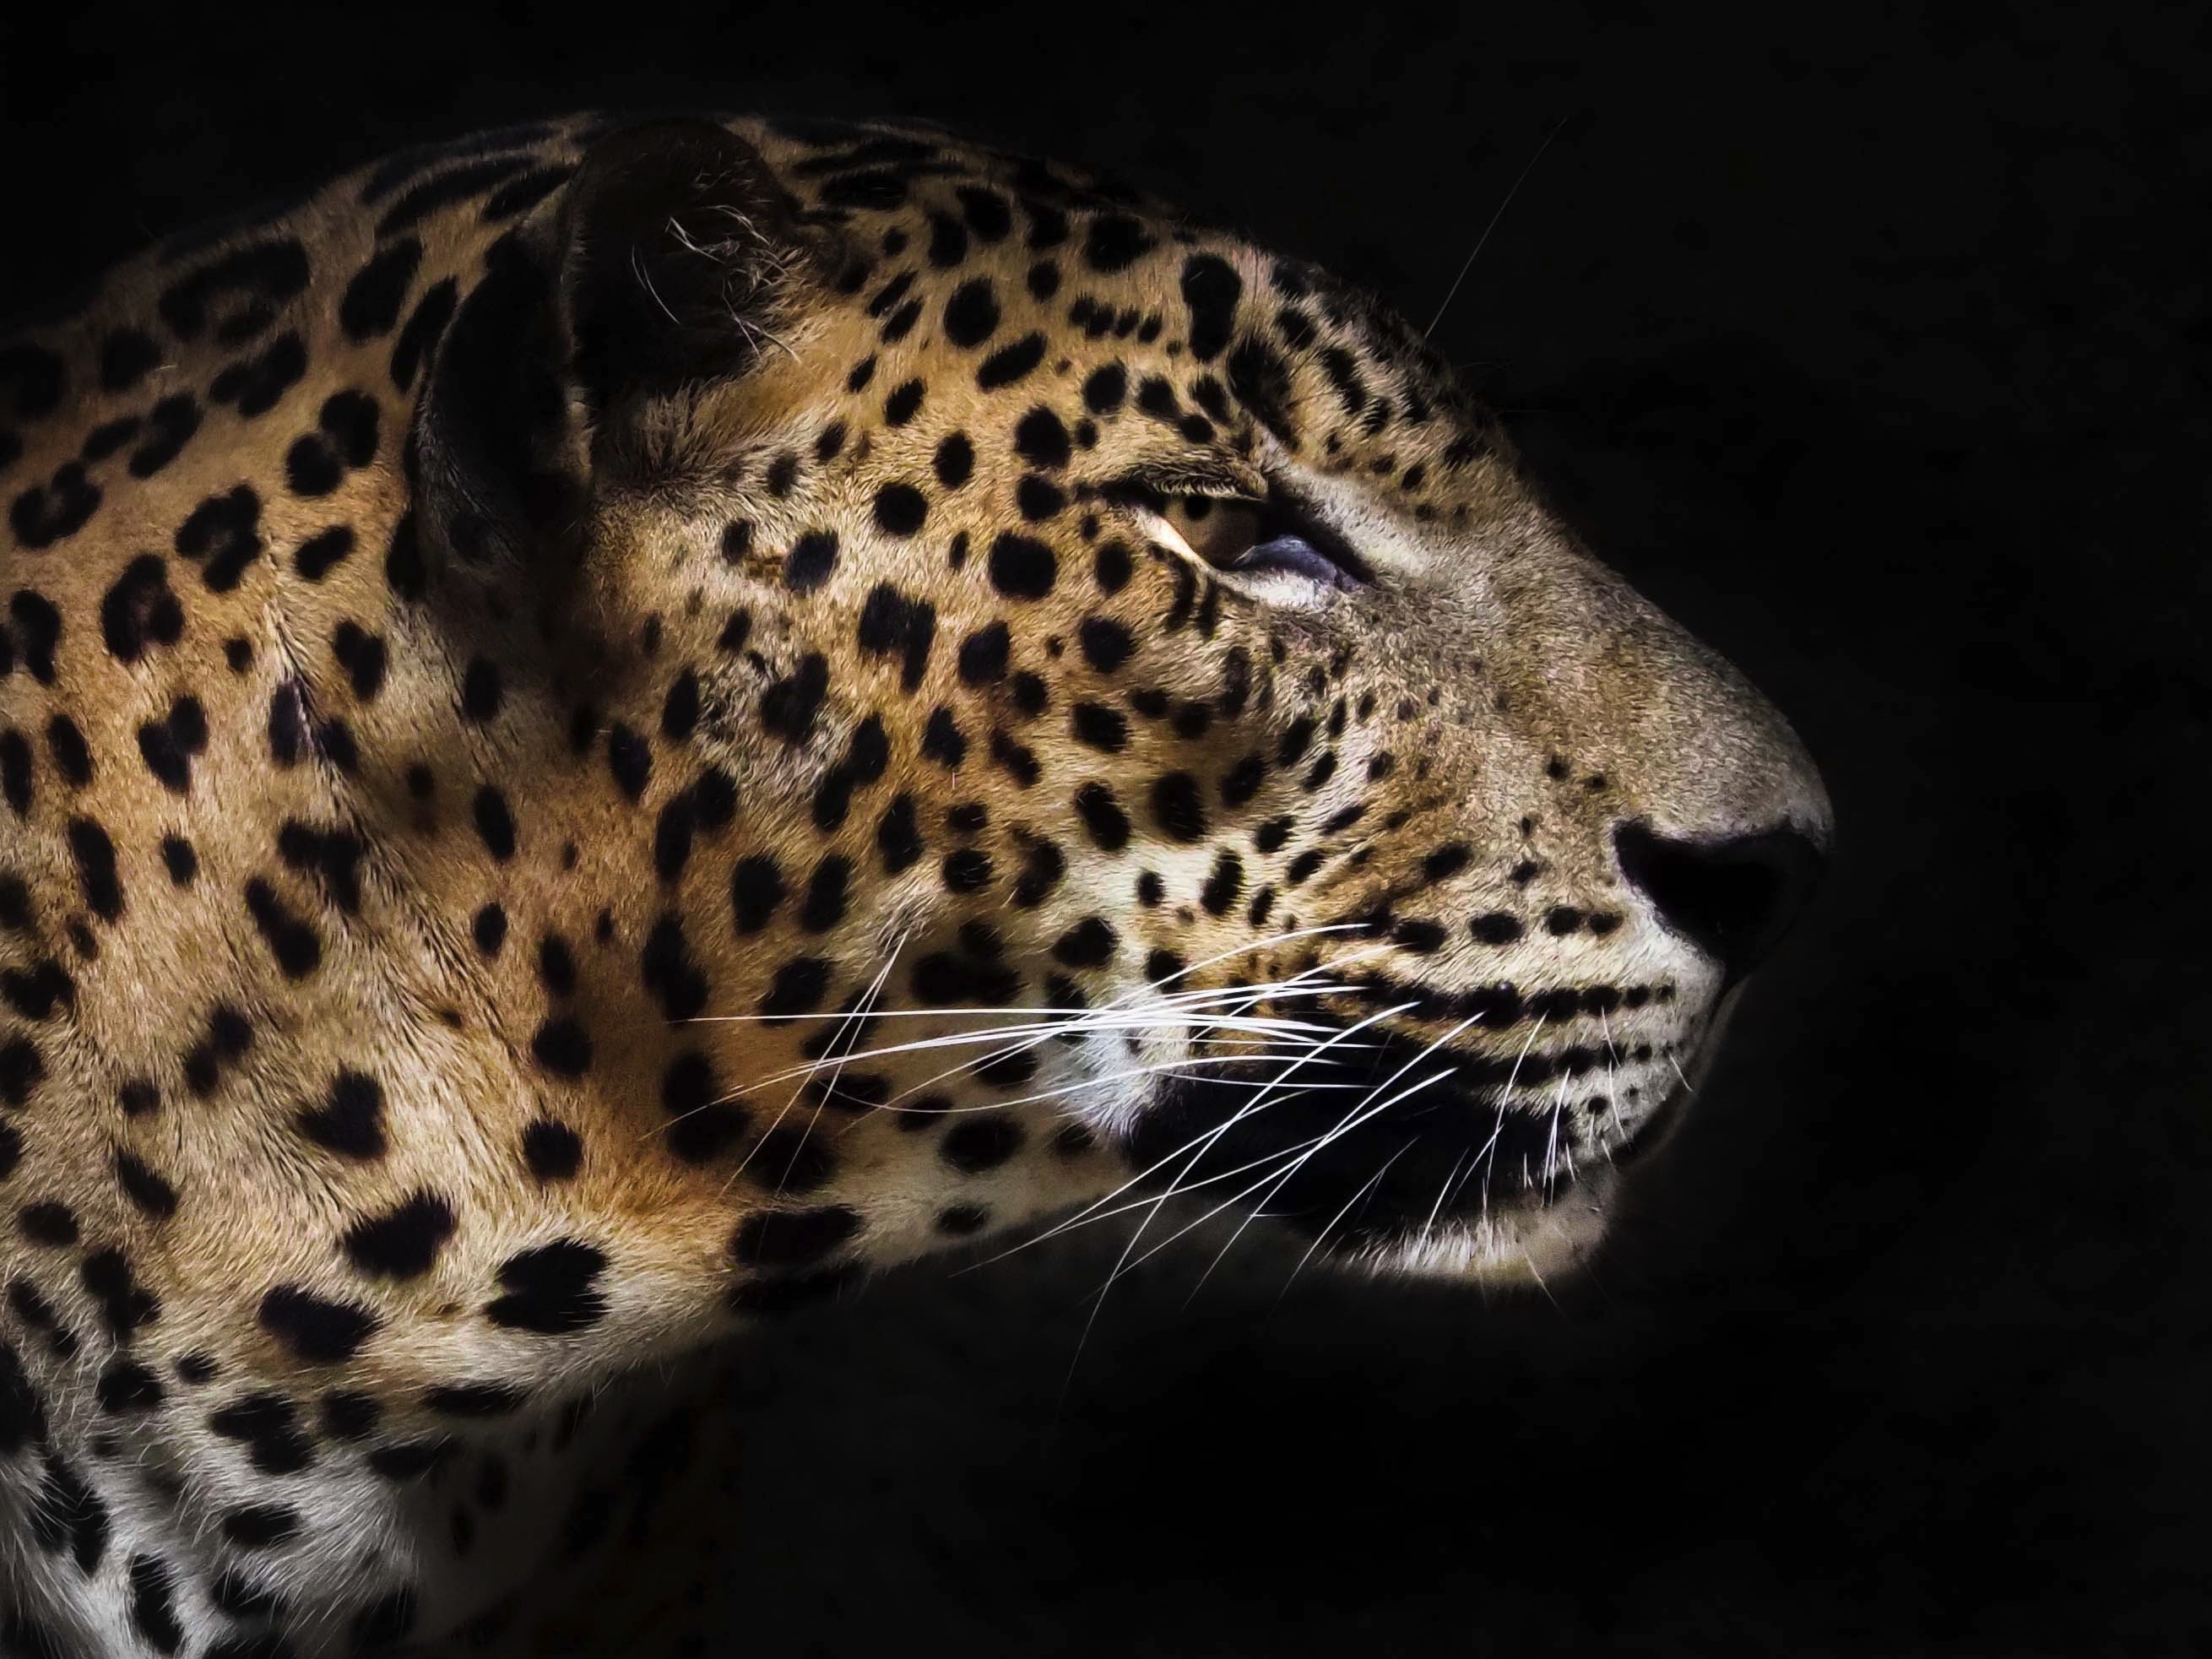 #Leopard; #animal #pantheratigris, Eka Novianto Nugroho